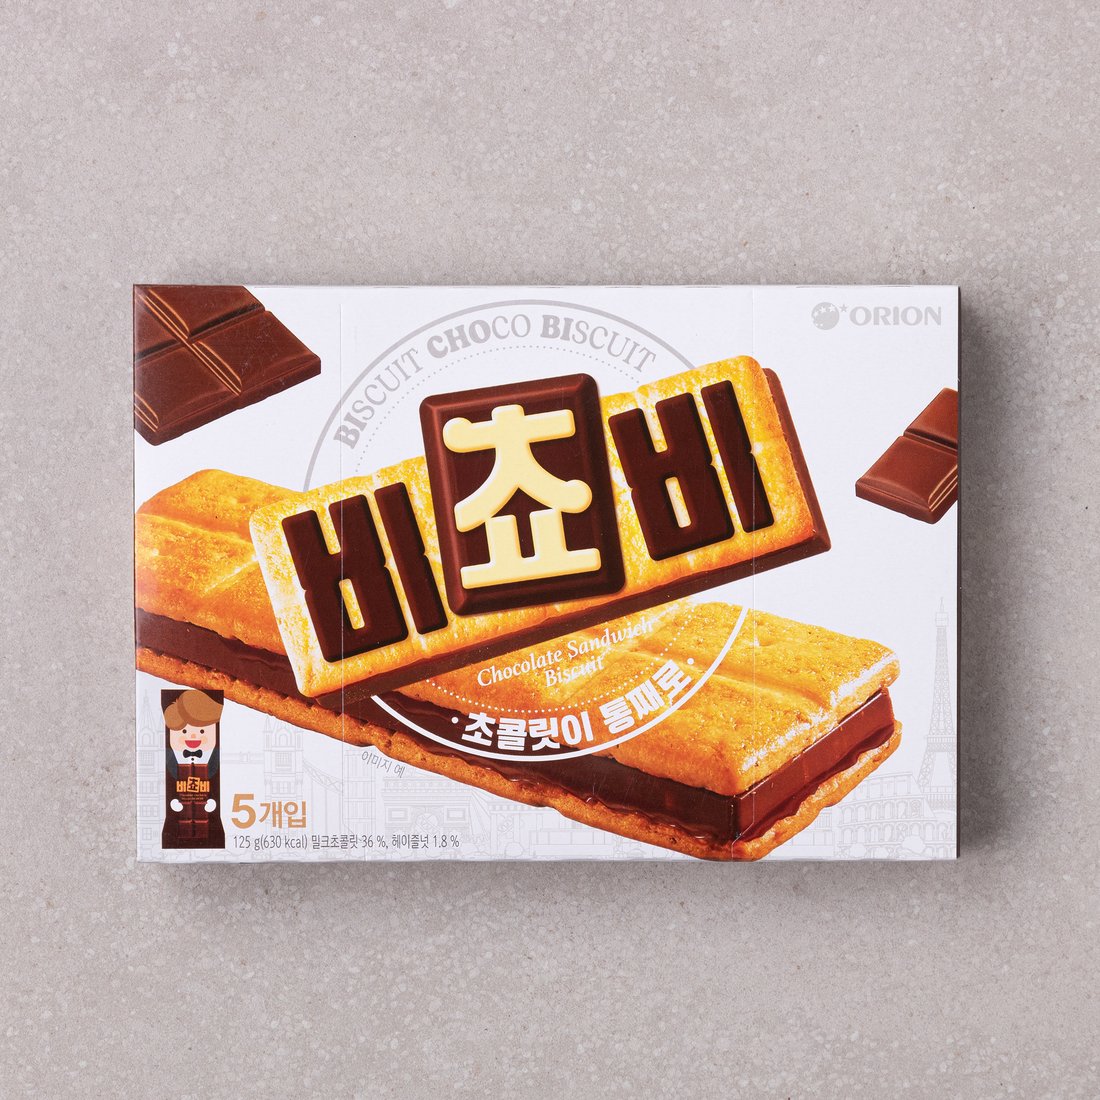 好丽友巧克力饼干夹心5枚 可爱卡通儿童食品酥脆可口韩国进口零食